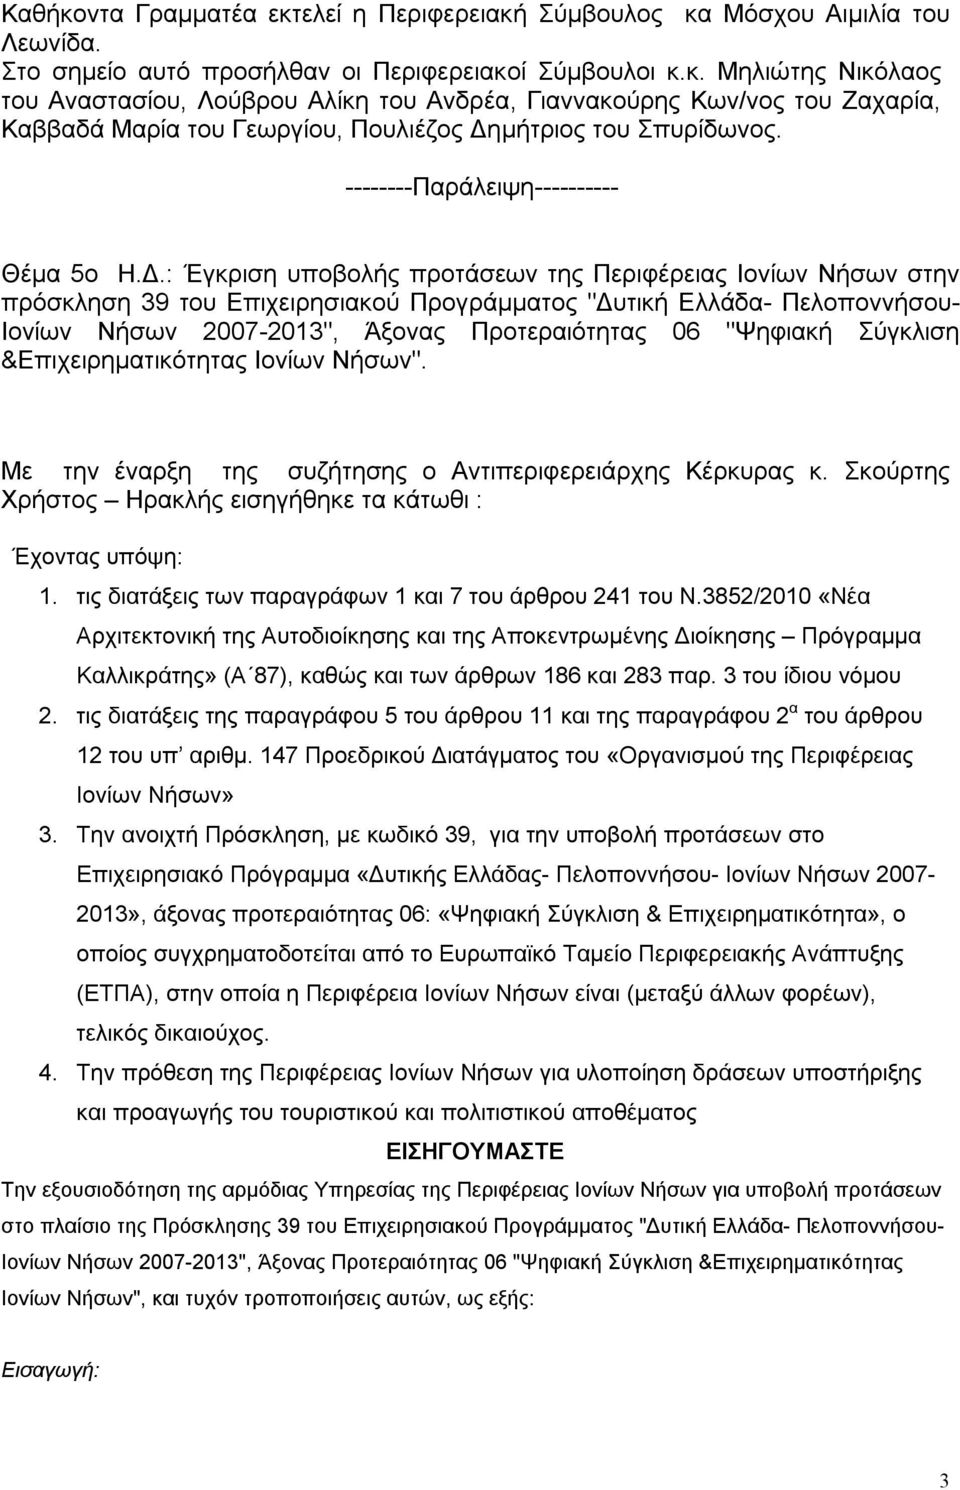 : Έγκριση υποβολής προτάσεων της Περιφέρειας Ιονίων Νήσων στην πρόσκληση 39 του Επιχειρησιακού Προγράμματος "Δυτική Ελλάδα- Πελοποννήσου- Ιονίων Νήσων 2007-2013", Άξονας Προτεραιότητας 06 "Ψηφιακή